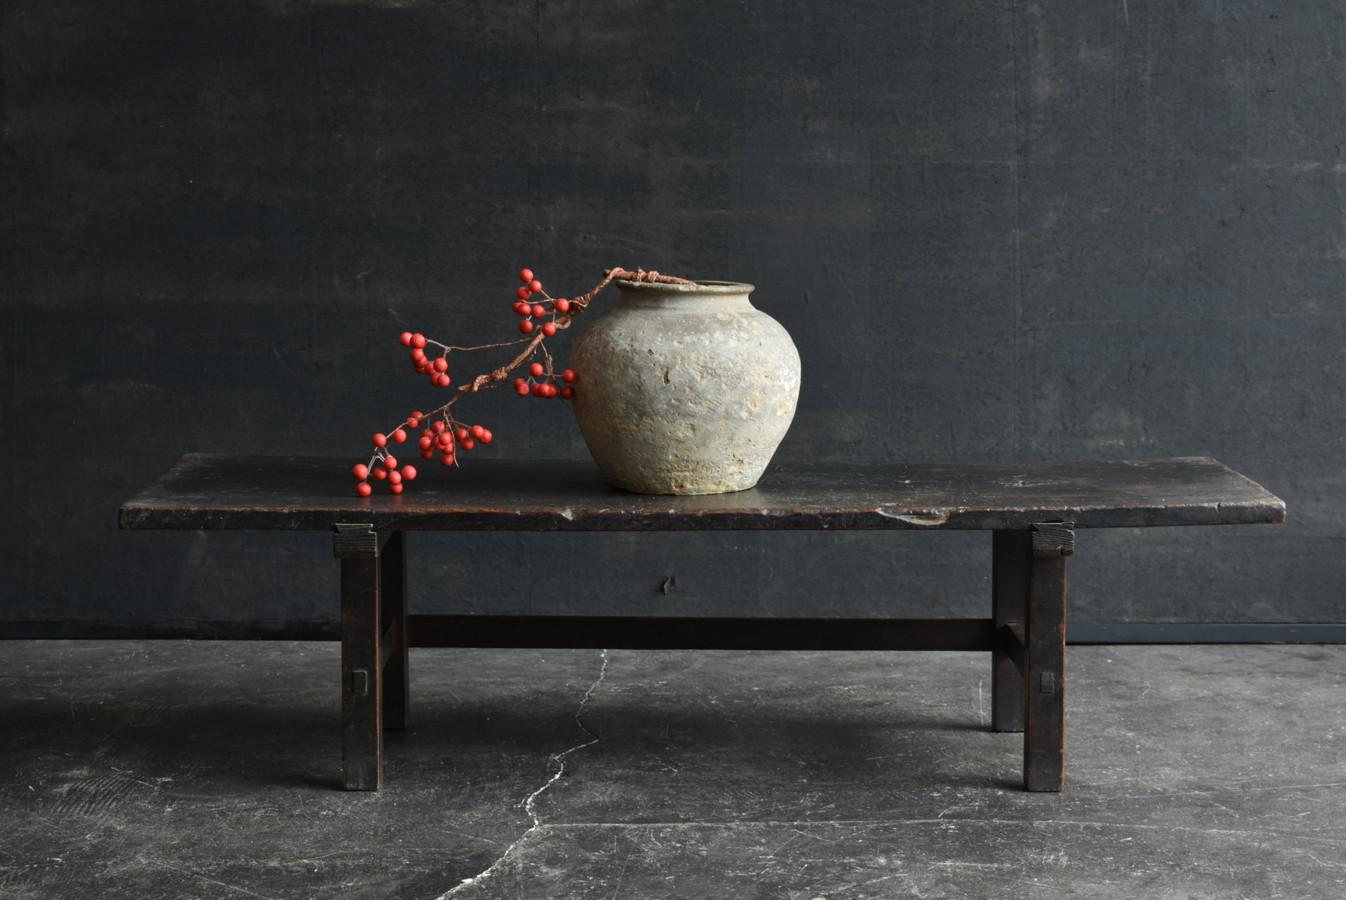 Dies ist eine seltene japanische antike Holz schwarz niedrigen Tisch in der späten Edo bis Meiji-Periode gemacht.
Die Platte ist aus Zelkova und die Beine sind aus Zypresse oder Zeder gefertigt.
Er hat ein sehr einfaches Design und passt in einen